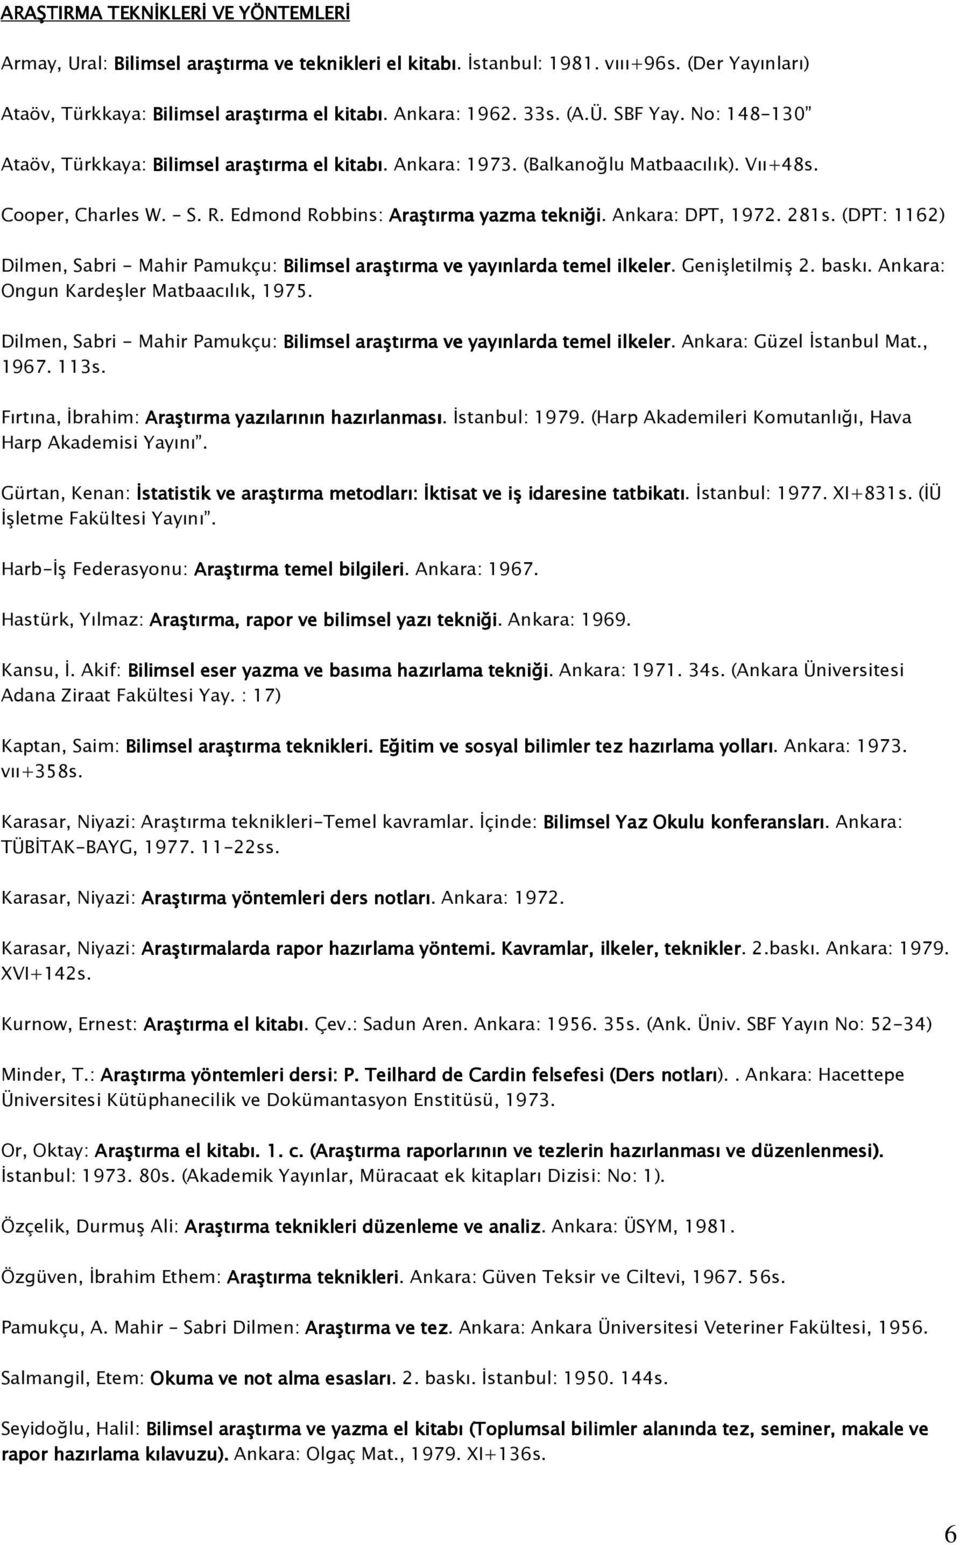 Ankara: DPT, 1972. 281s. (DPT: 1162) Dilmen, Sabri - Mahir Pamukçu: Bilimsel araştırma ve yayınlarda temel ilkeler. Genişletilmiş 2. baskı. Ankara: Ongun Kardeşler Matbaacılık, 1975.